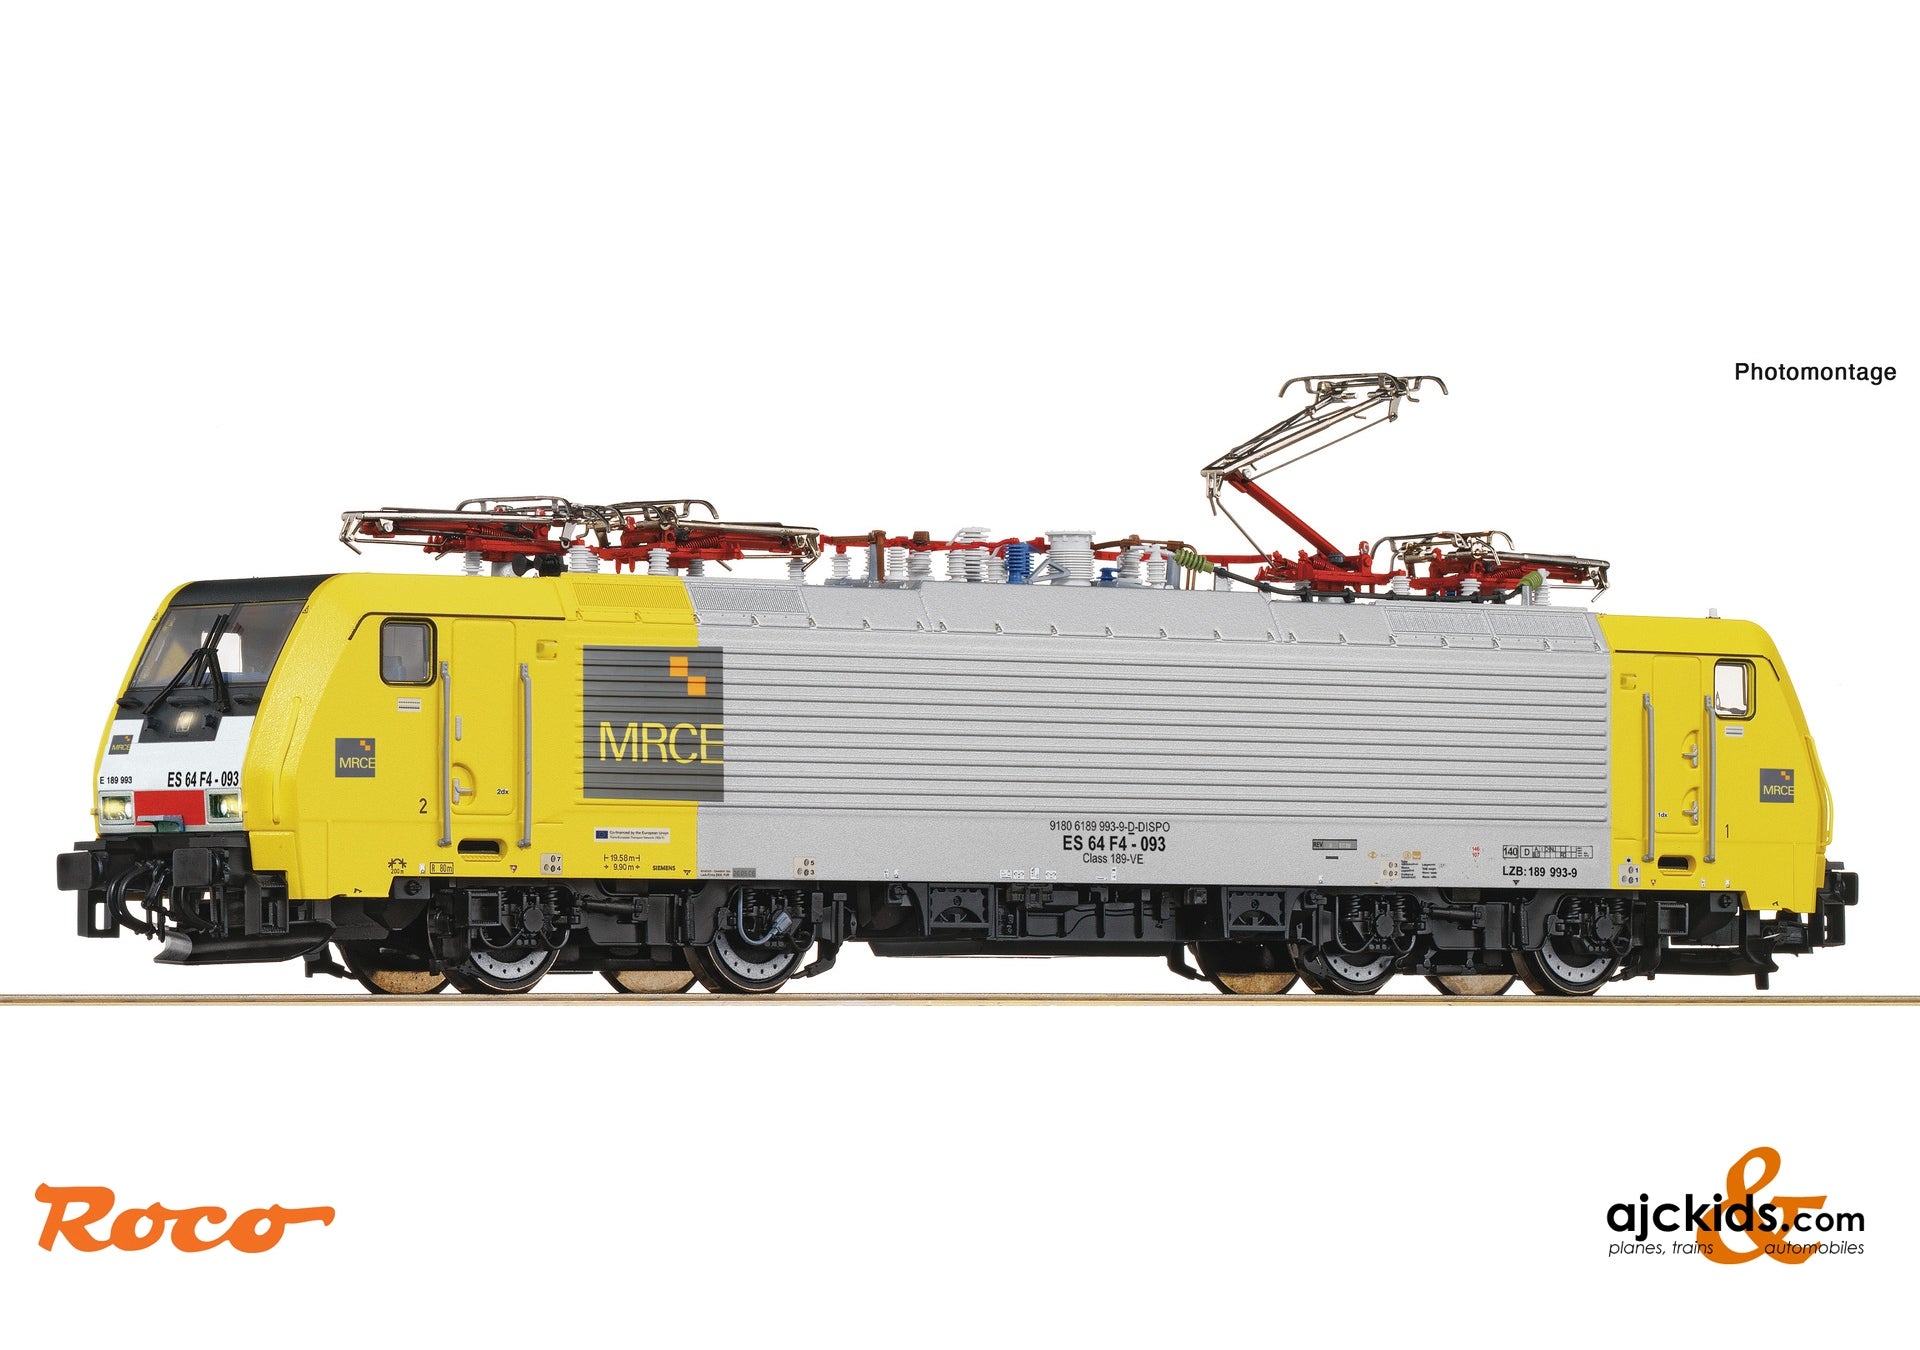 Roco 7510019 - Electric locomotive 189 993-9, MRCE/SBB CI at Ajckids.com